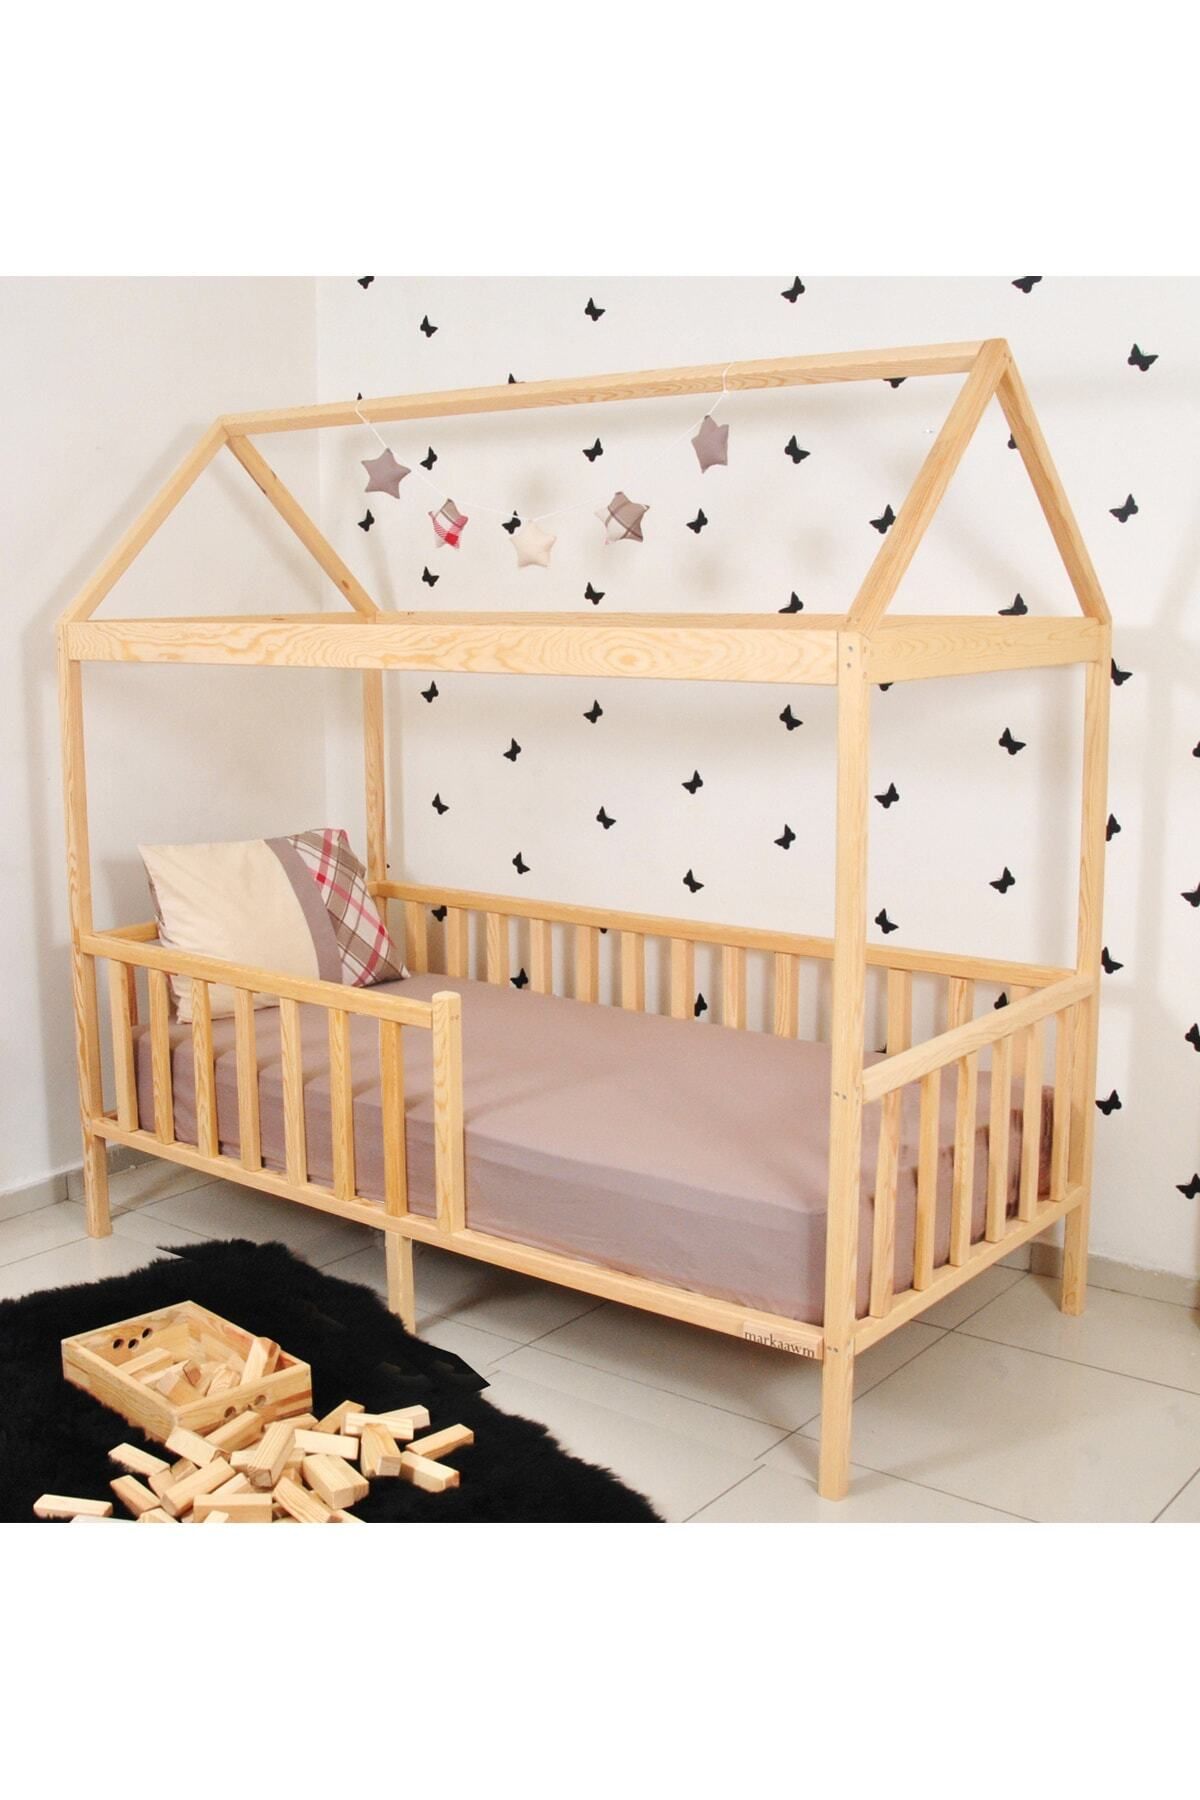 MiniWood Montessori Yatak Çocuk Yatak Bebek Karyola Doğal Çam Beşik Damla